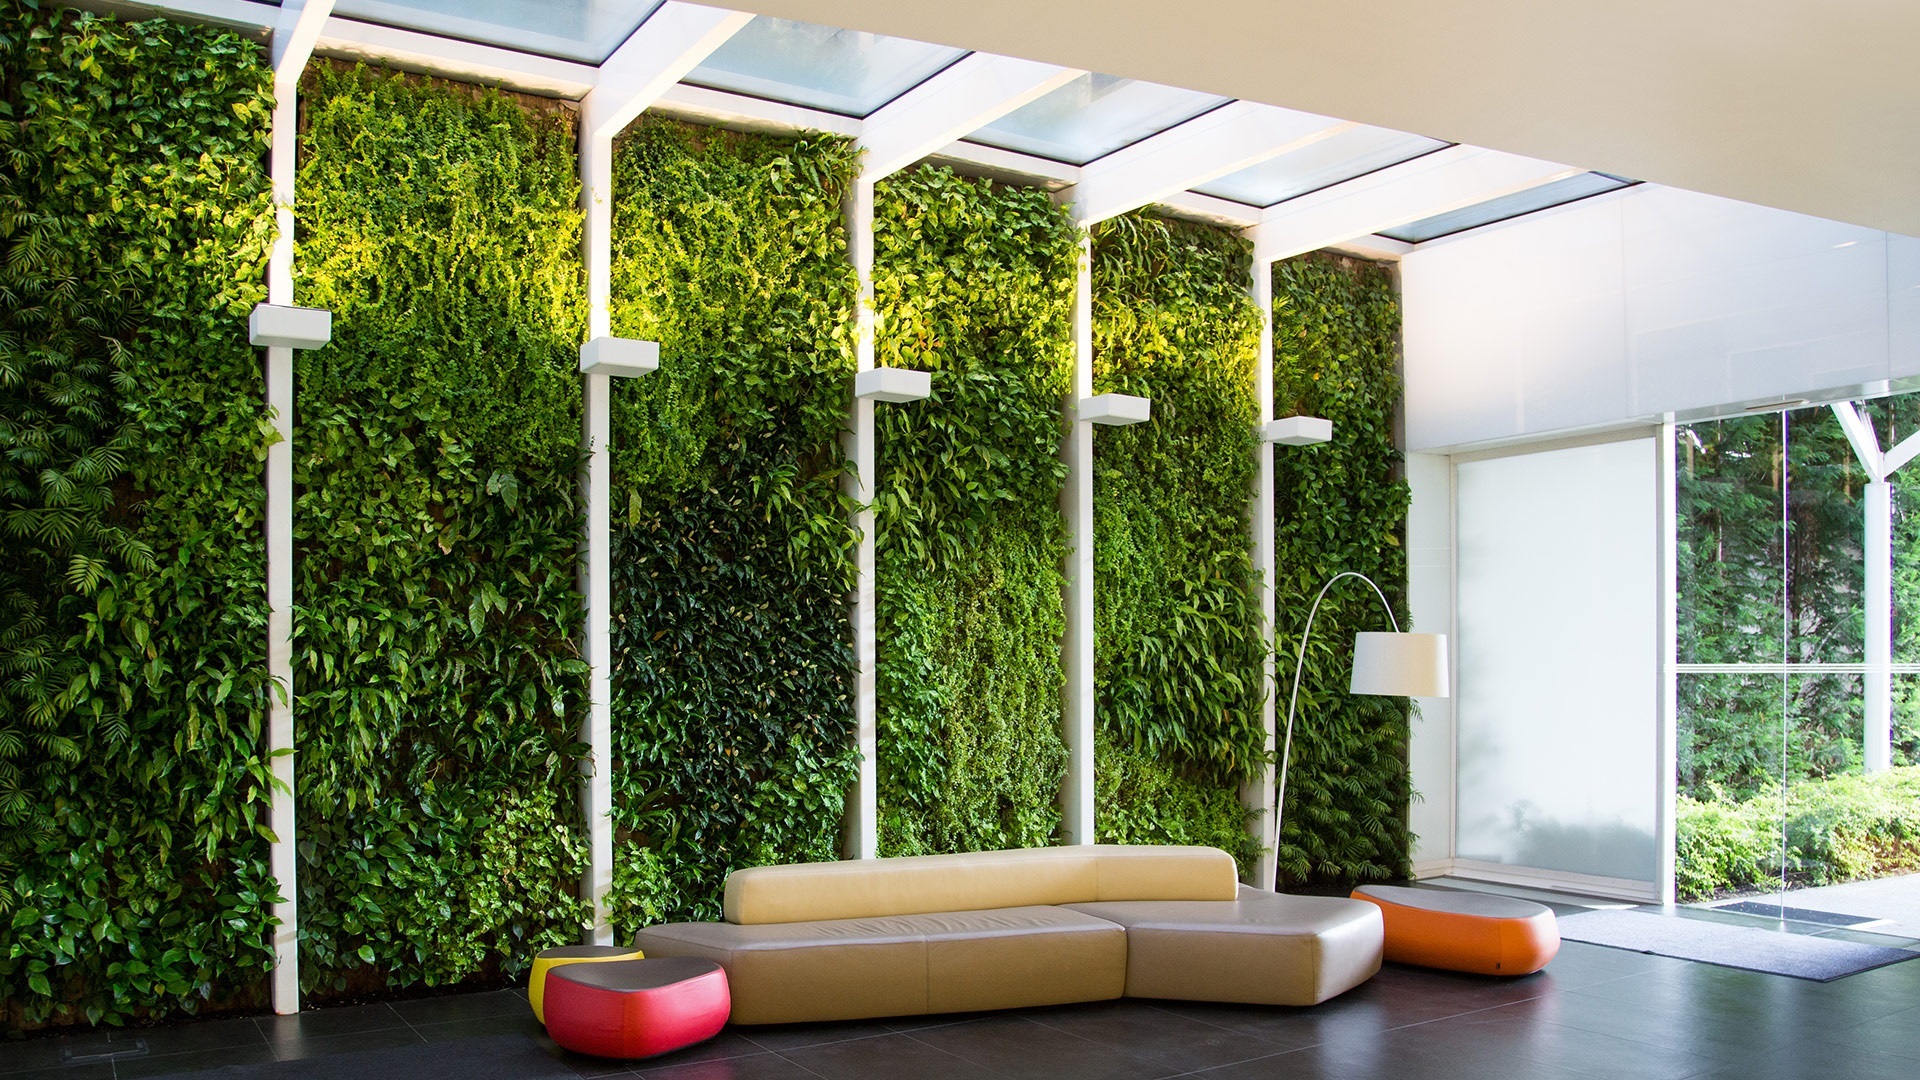 Design, realisation and maintenance of indoor vertical gardens